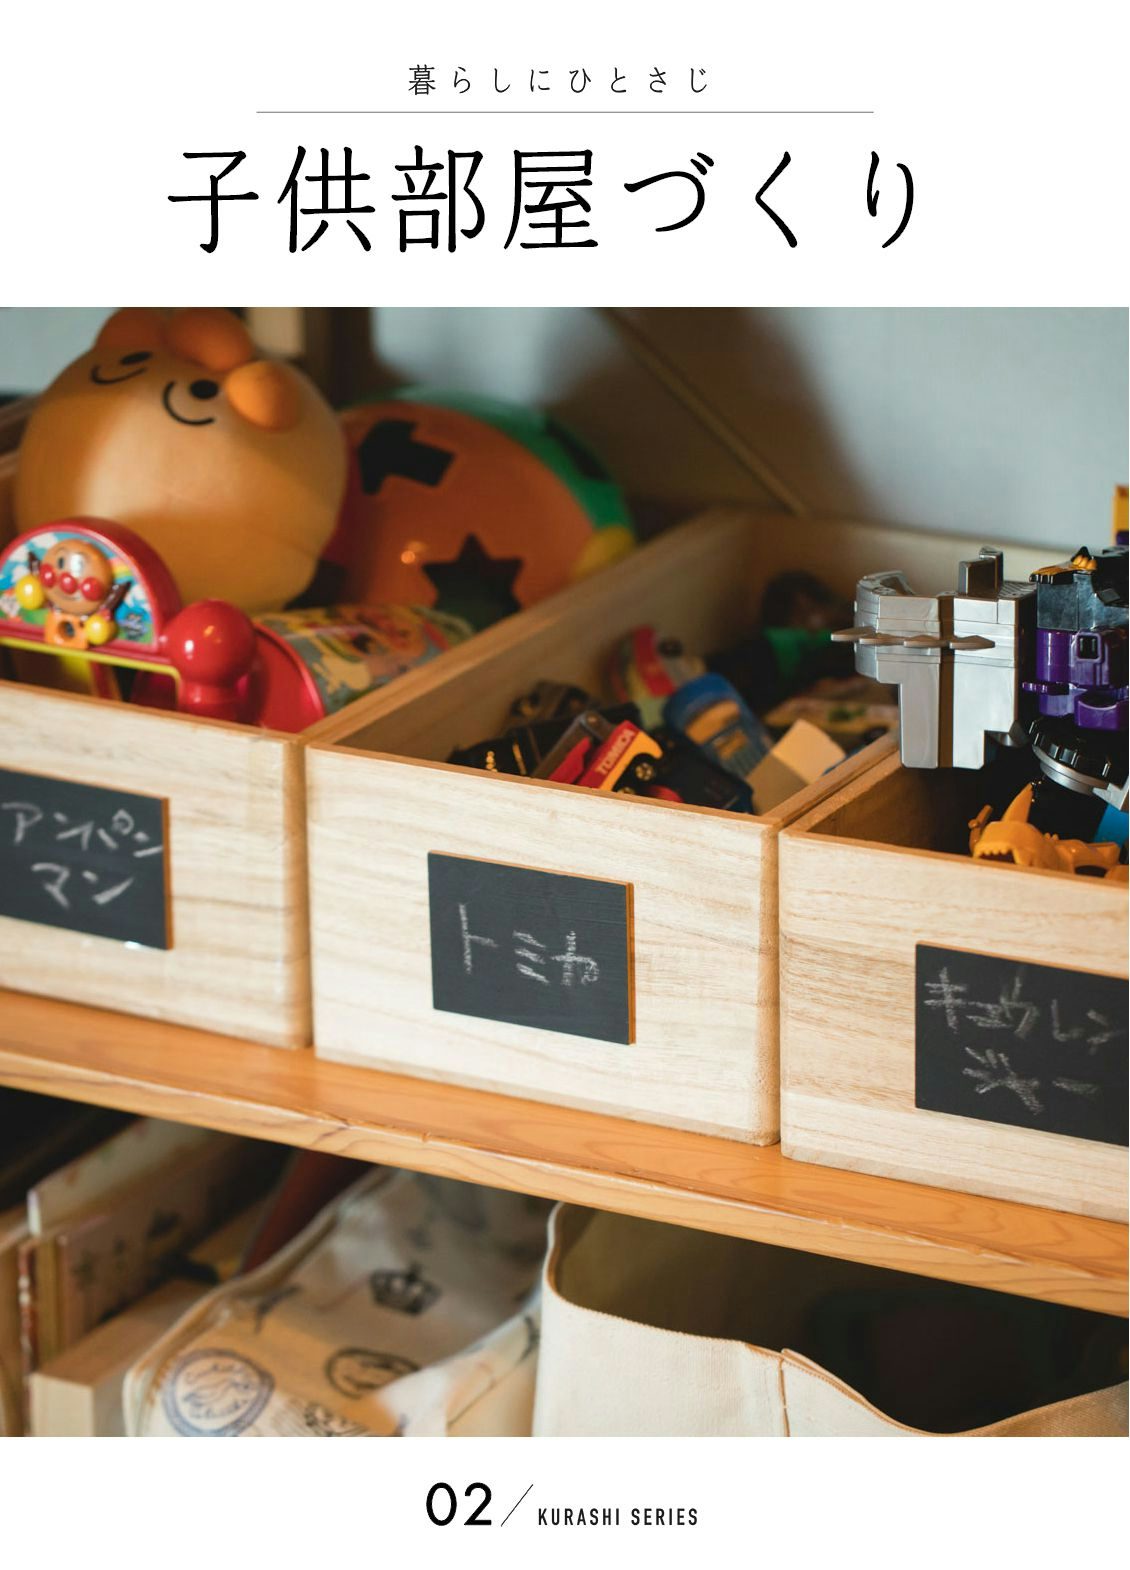 仕立て屋 国歌 火炎 北欧 おもちゃ 収納 Fujimori Jibika Jp